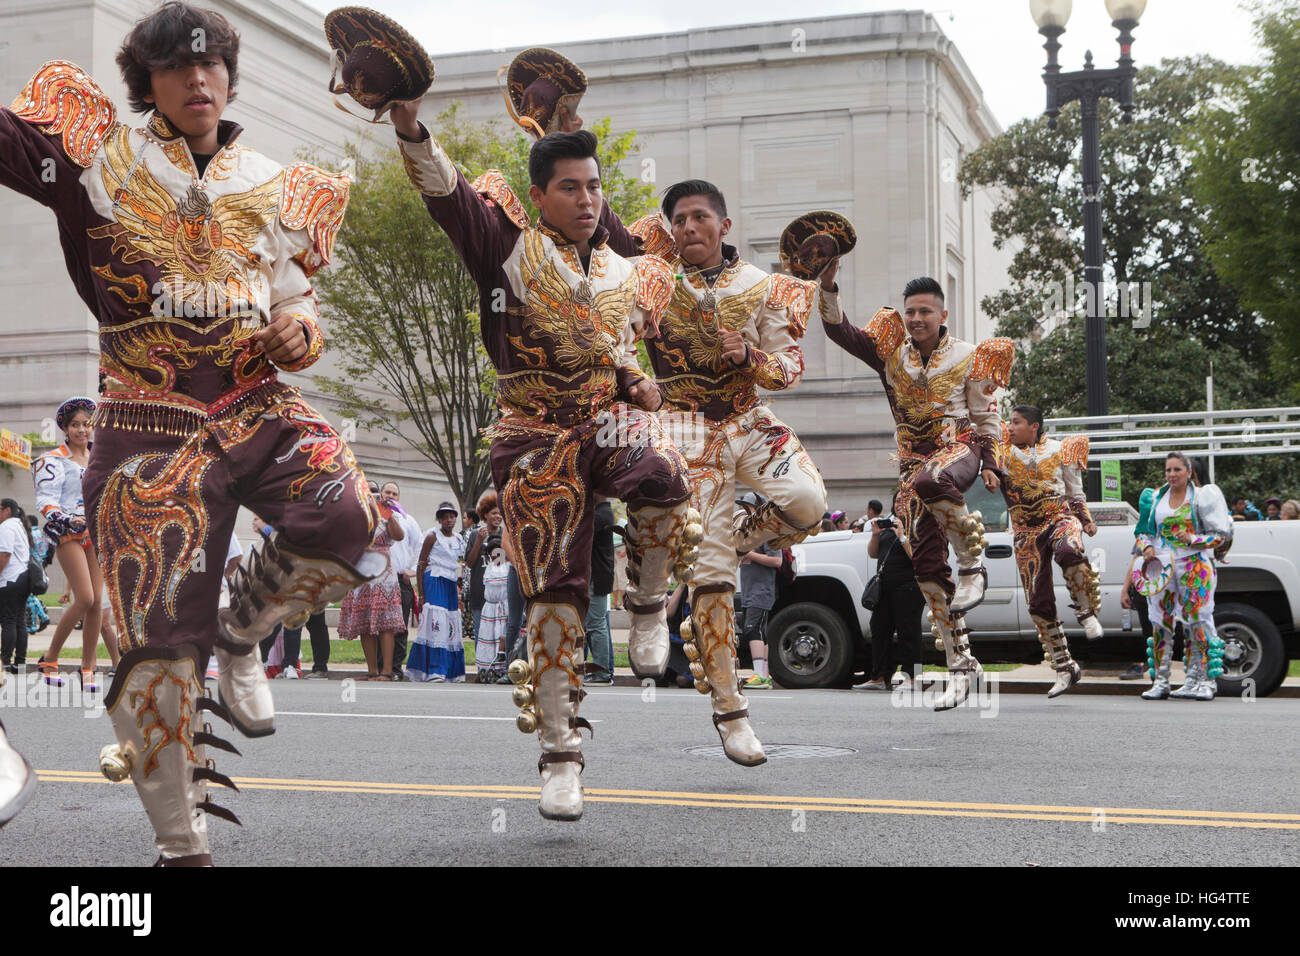 Caporales bolivienne traditionnelle au cours de danse latino festival - Washington, DC USA Banque D'Images